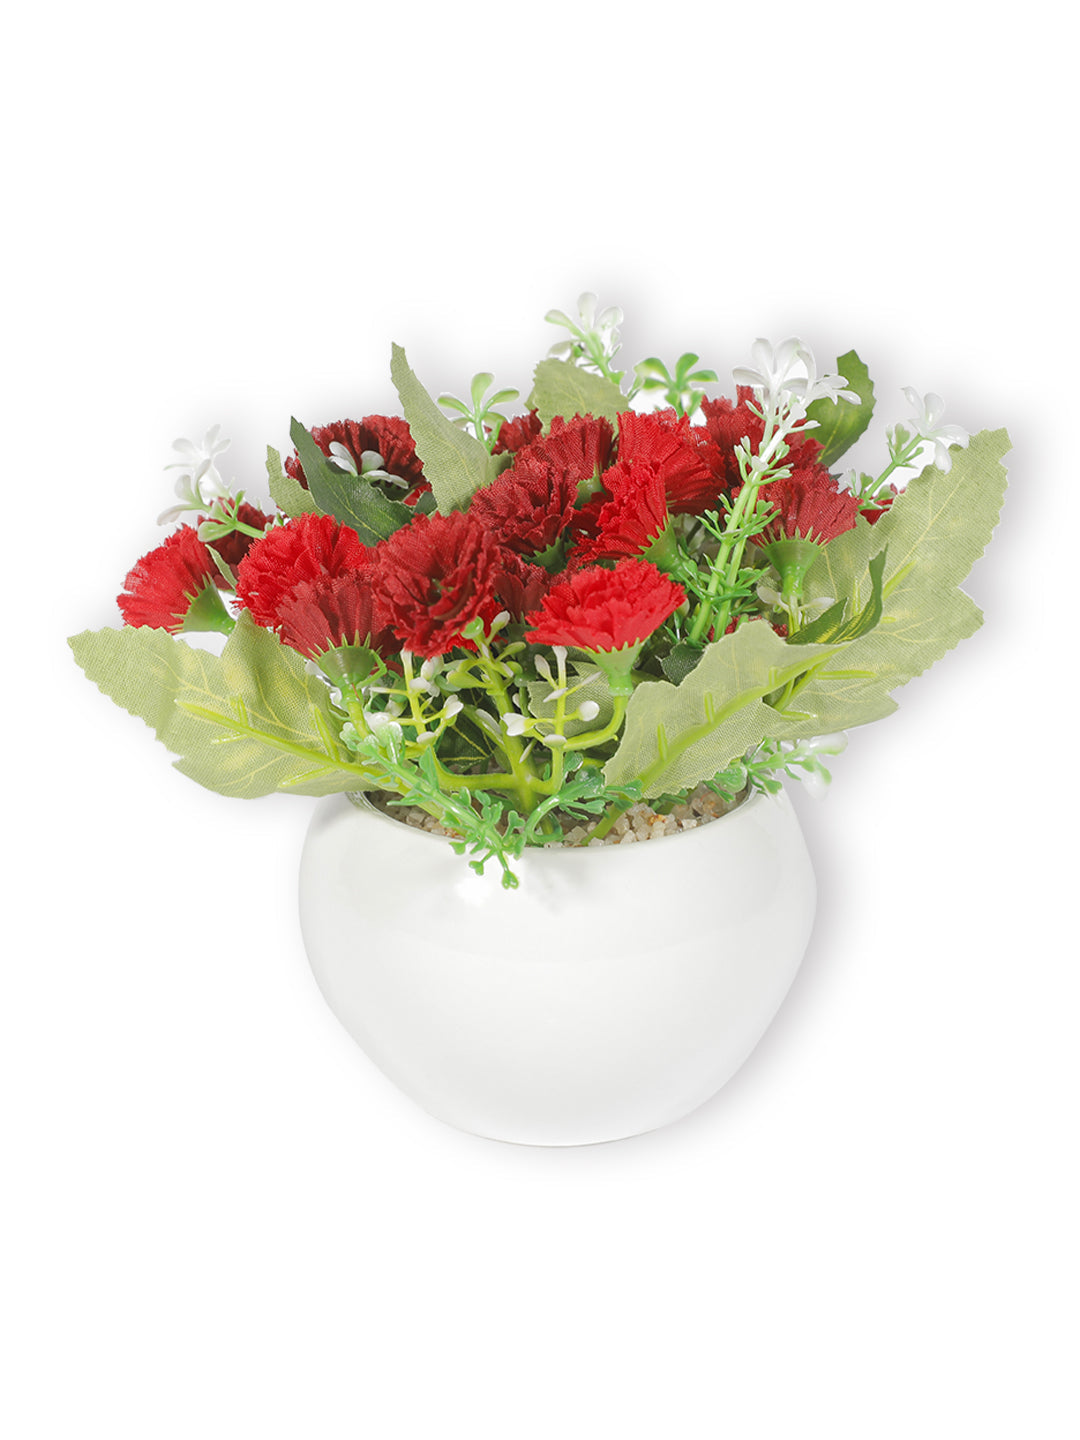 VON CASA Round Plastic Red Flower With White Pot